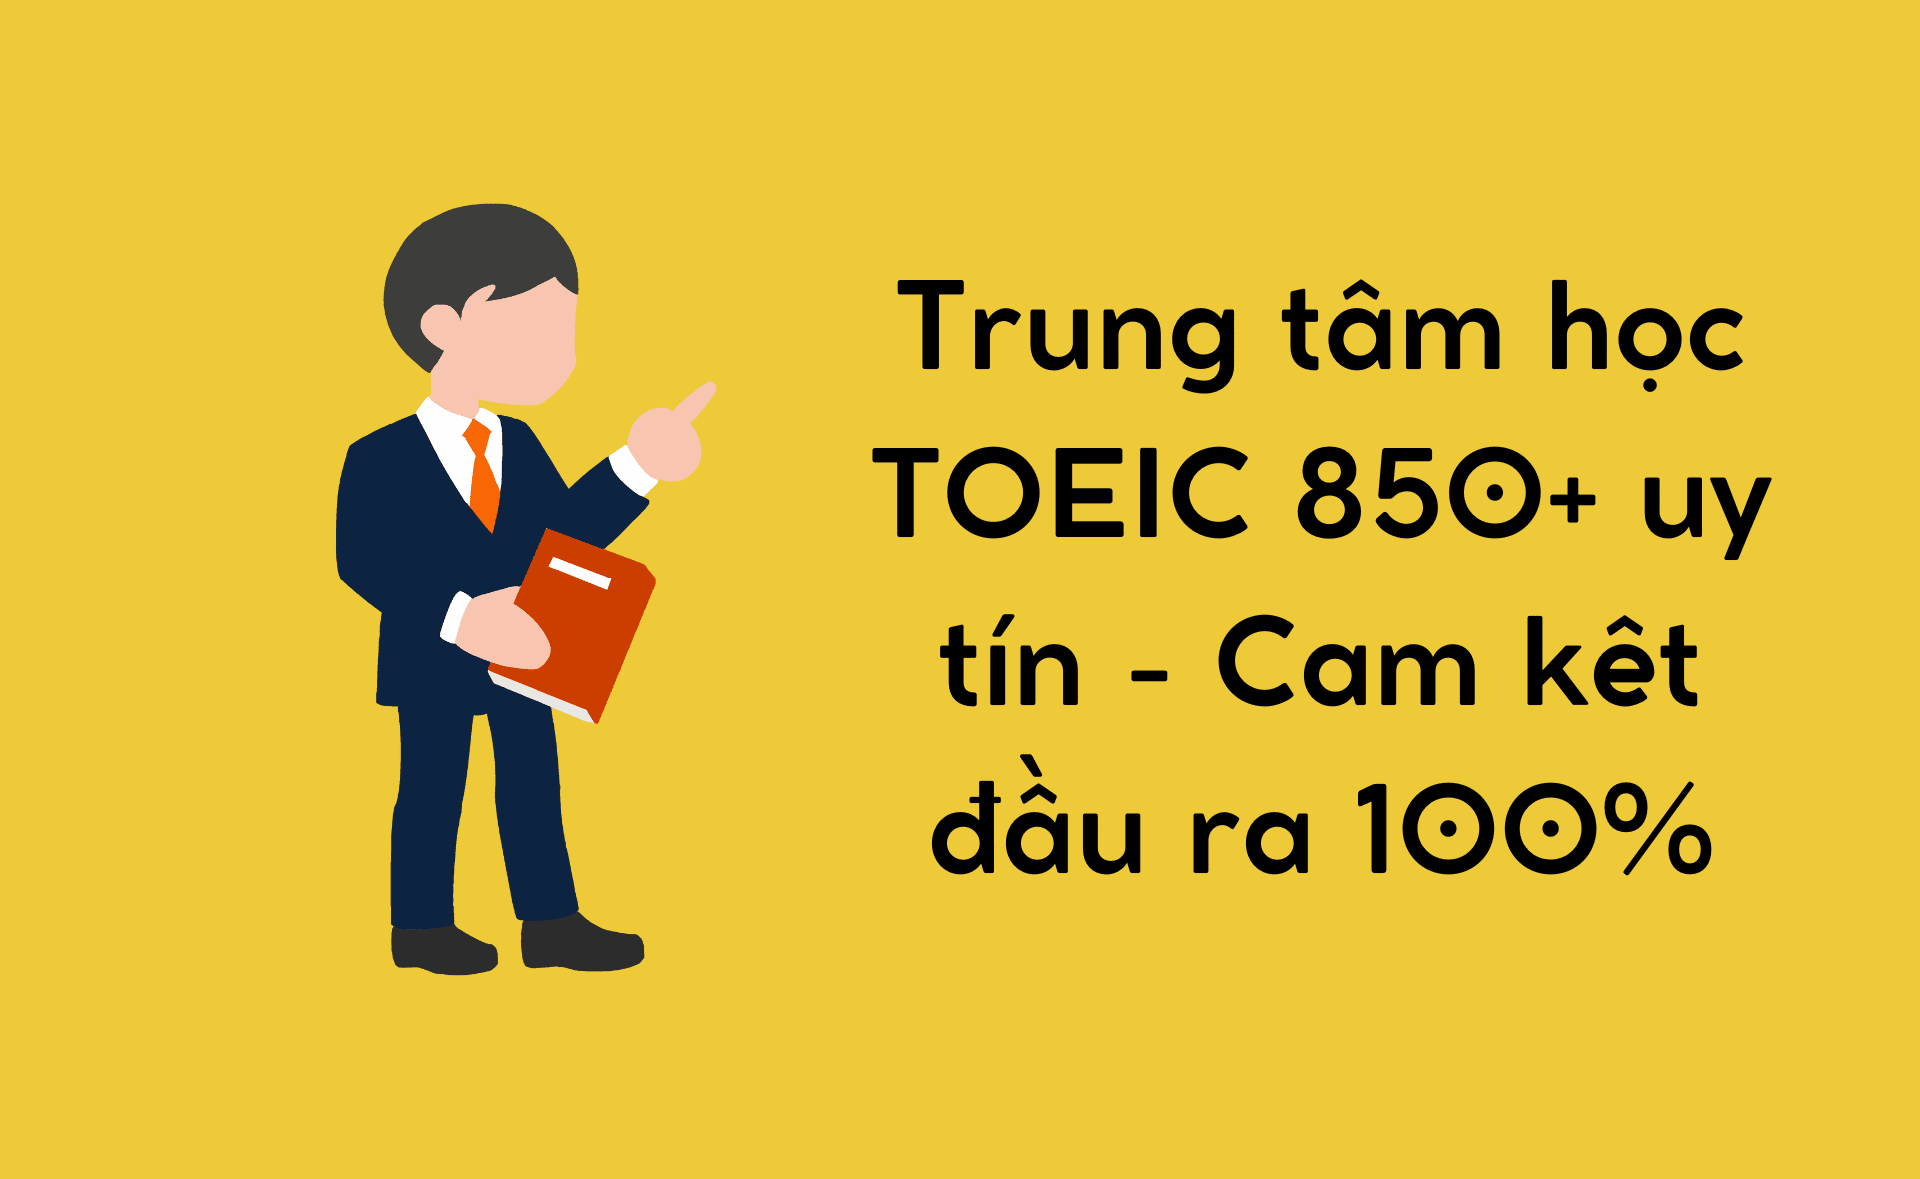 TOEIC 850+